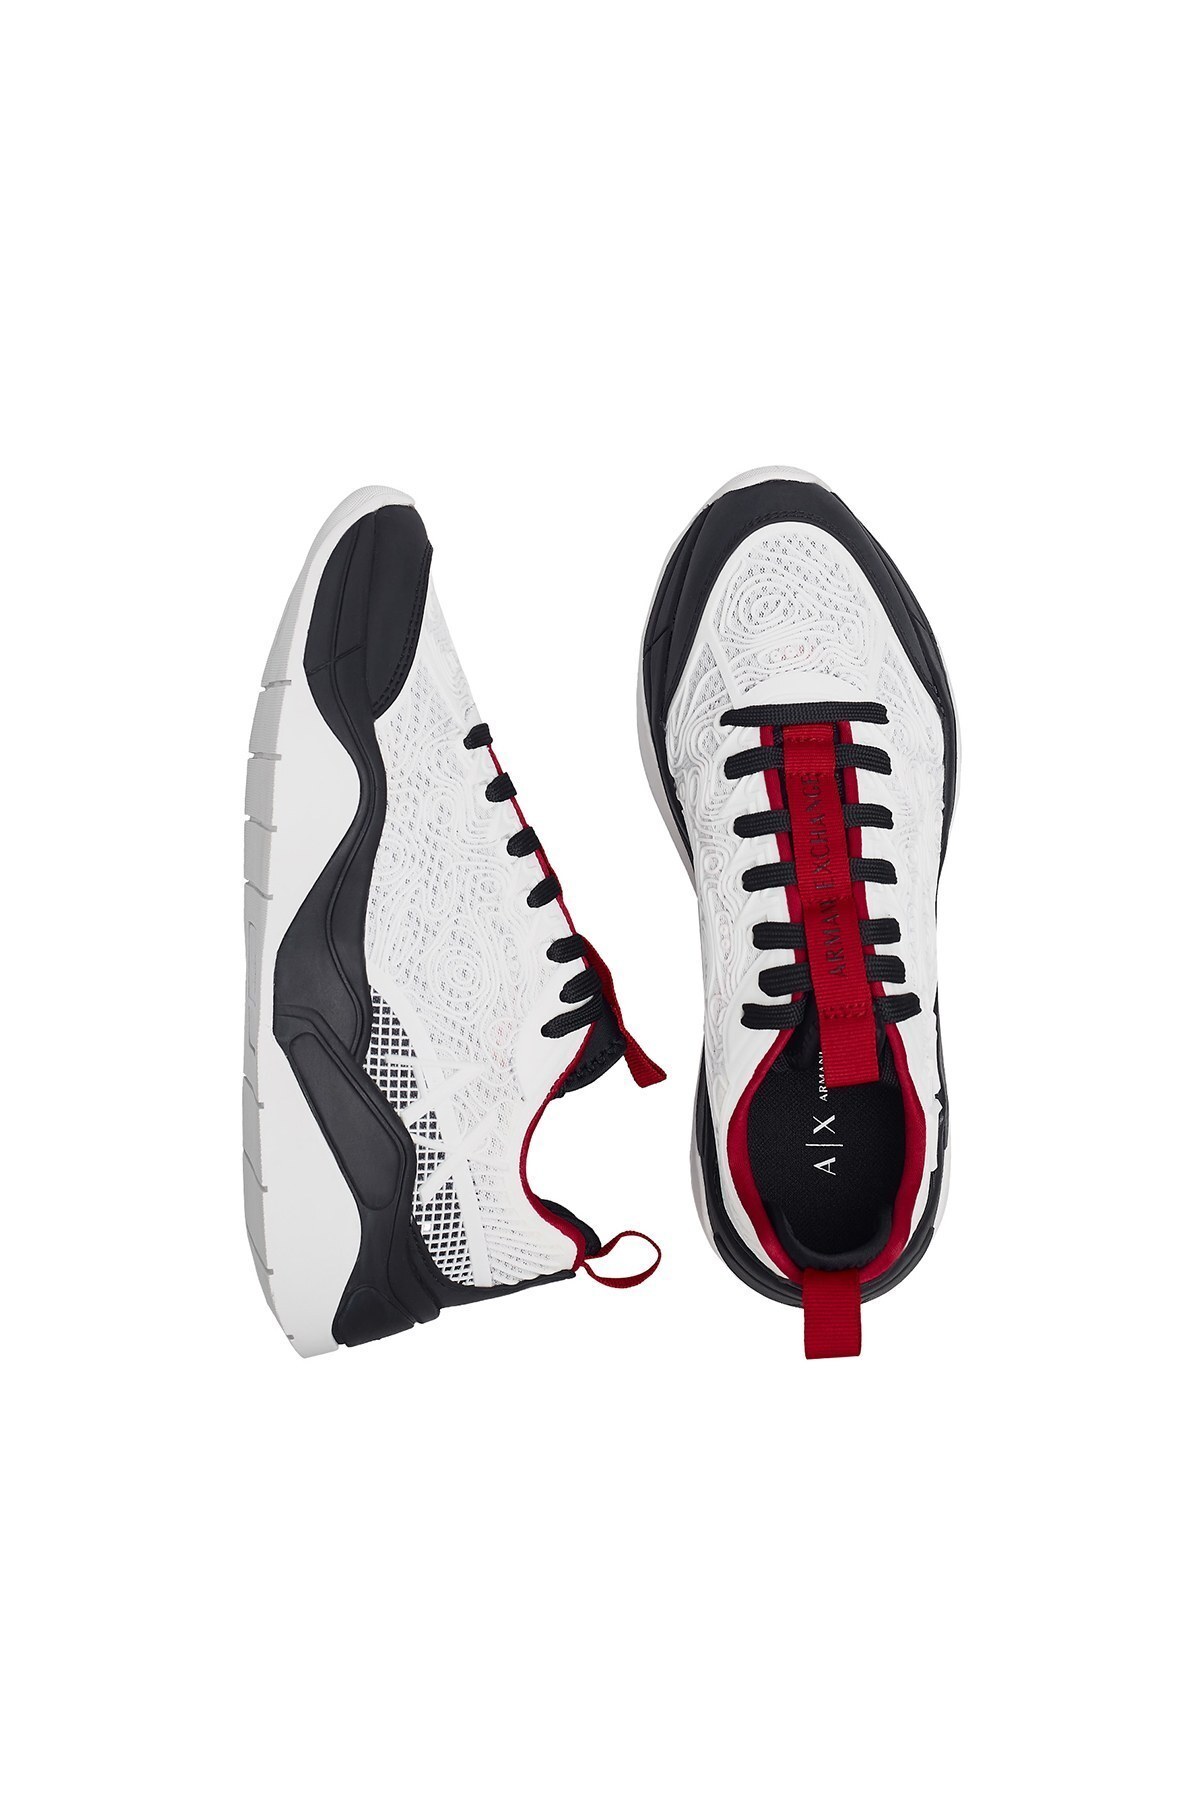 Armani Exchange Logo Baskılı Sneaker Bayan Ayakkabı XDX054 XV335 00152 BEYAZ